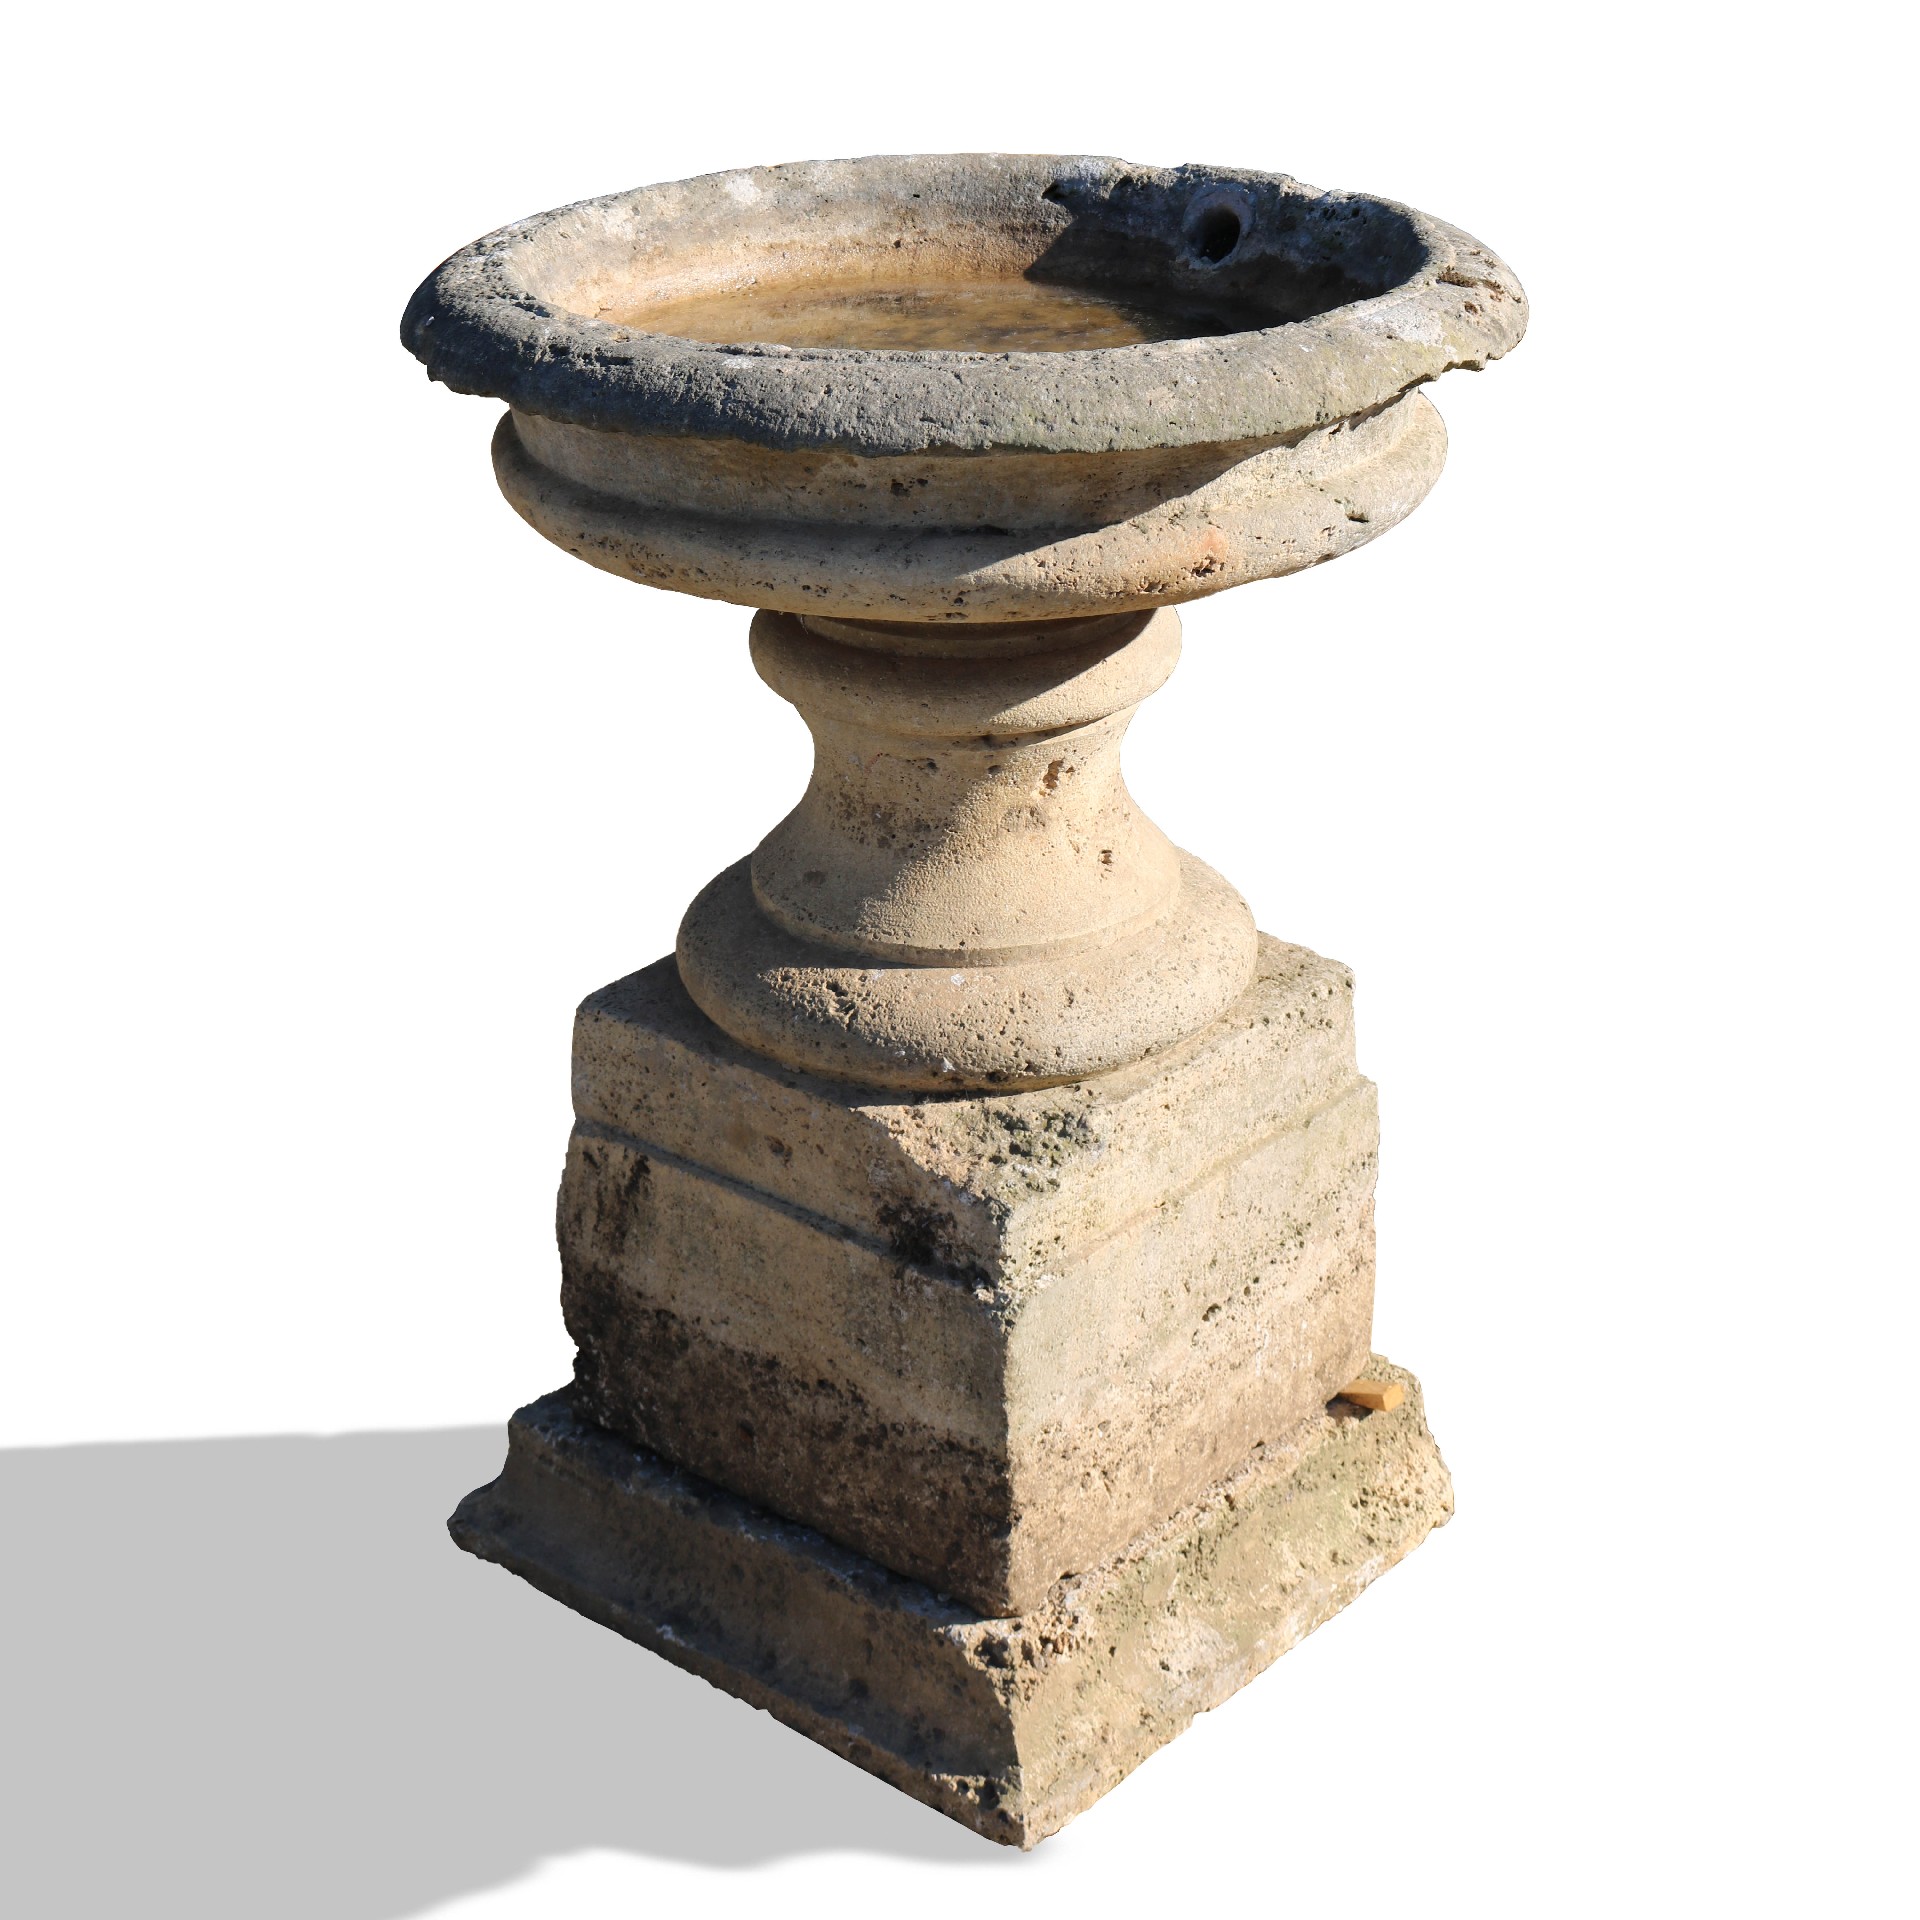 Fontana antica in pietra. Epoca 1600. - Fontane Antiche - Arredo Giardino - Prodotti - Antichità Fiorillo